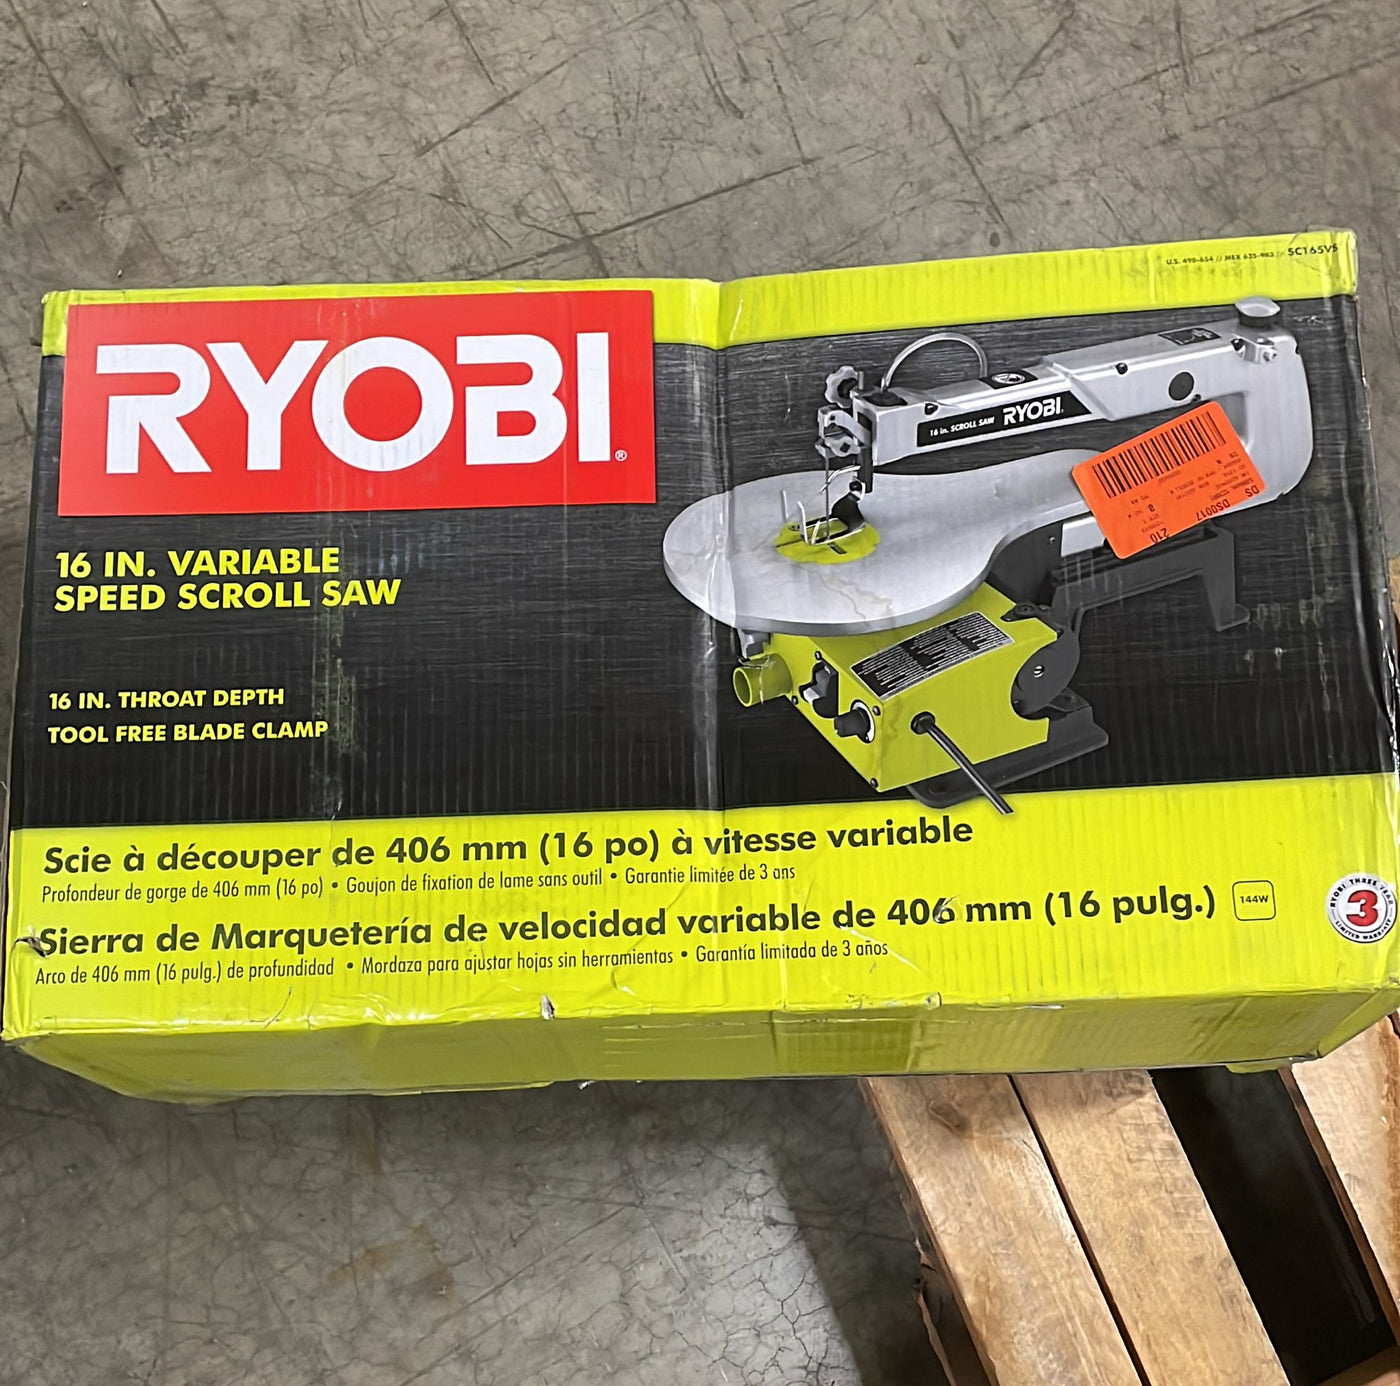 RYOBI 1.2 Amp Corded 16 in. Scroll Saw - $155